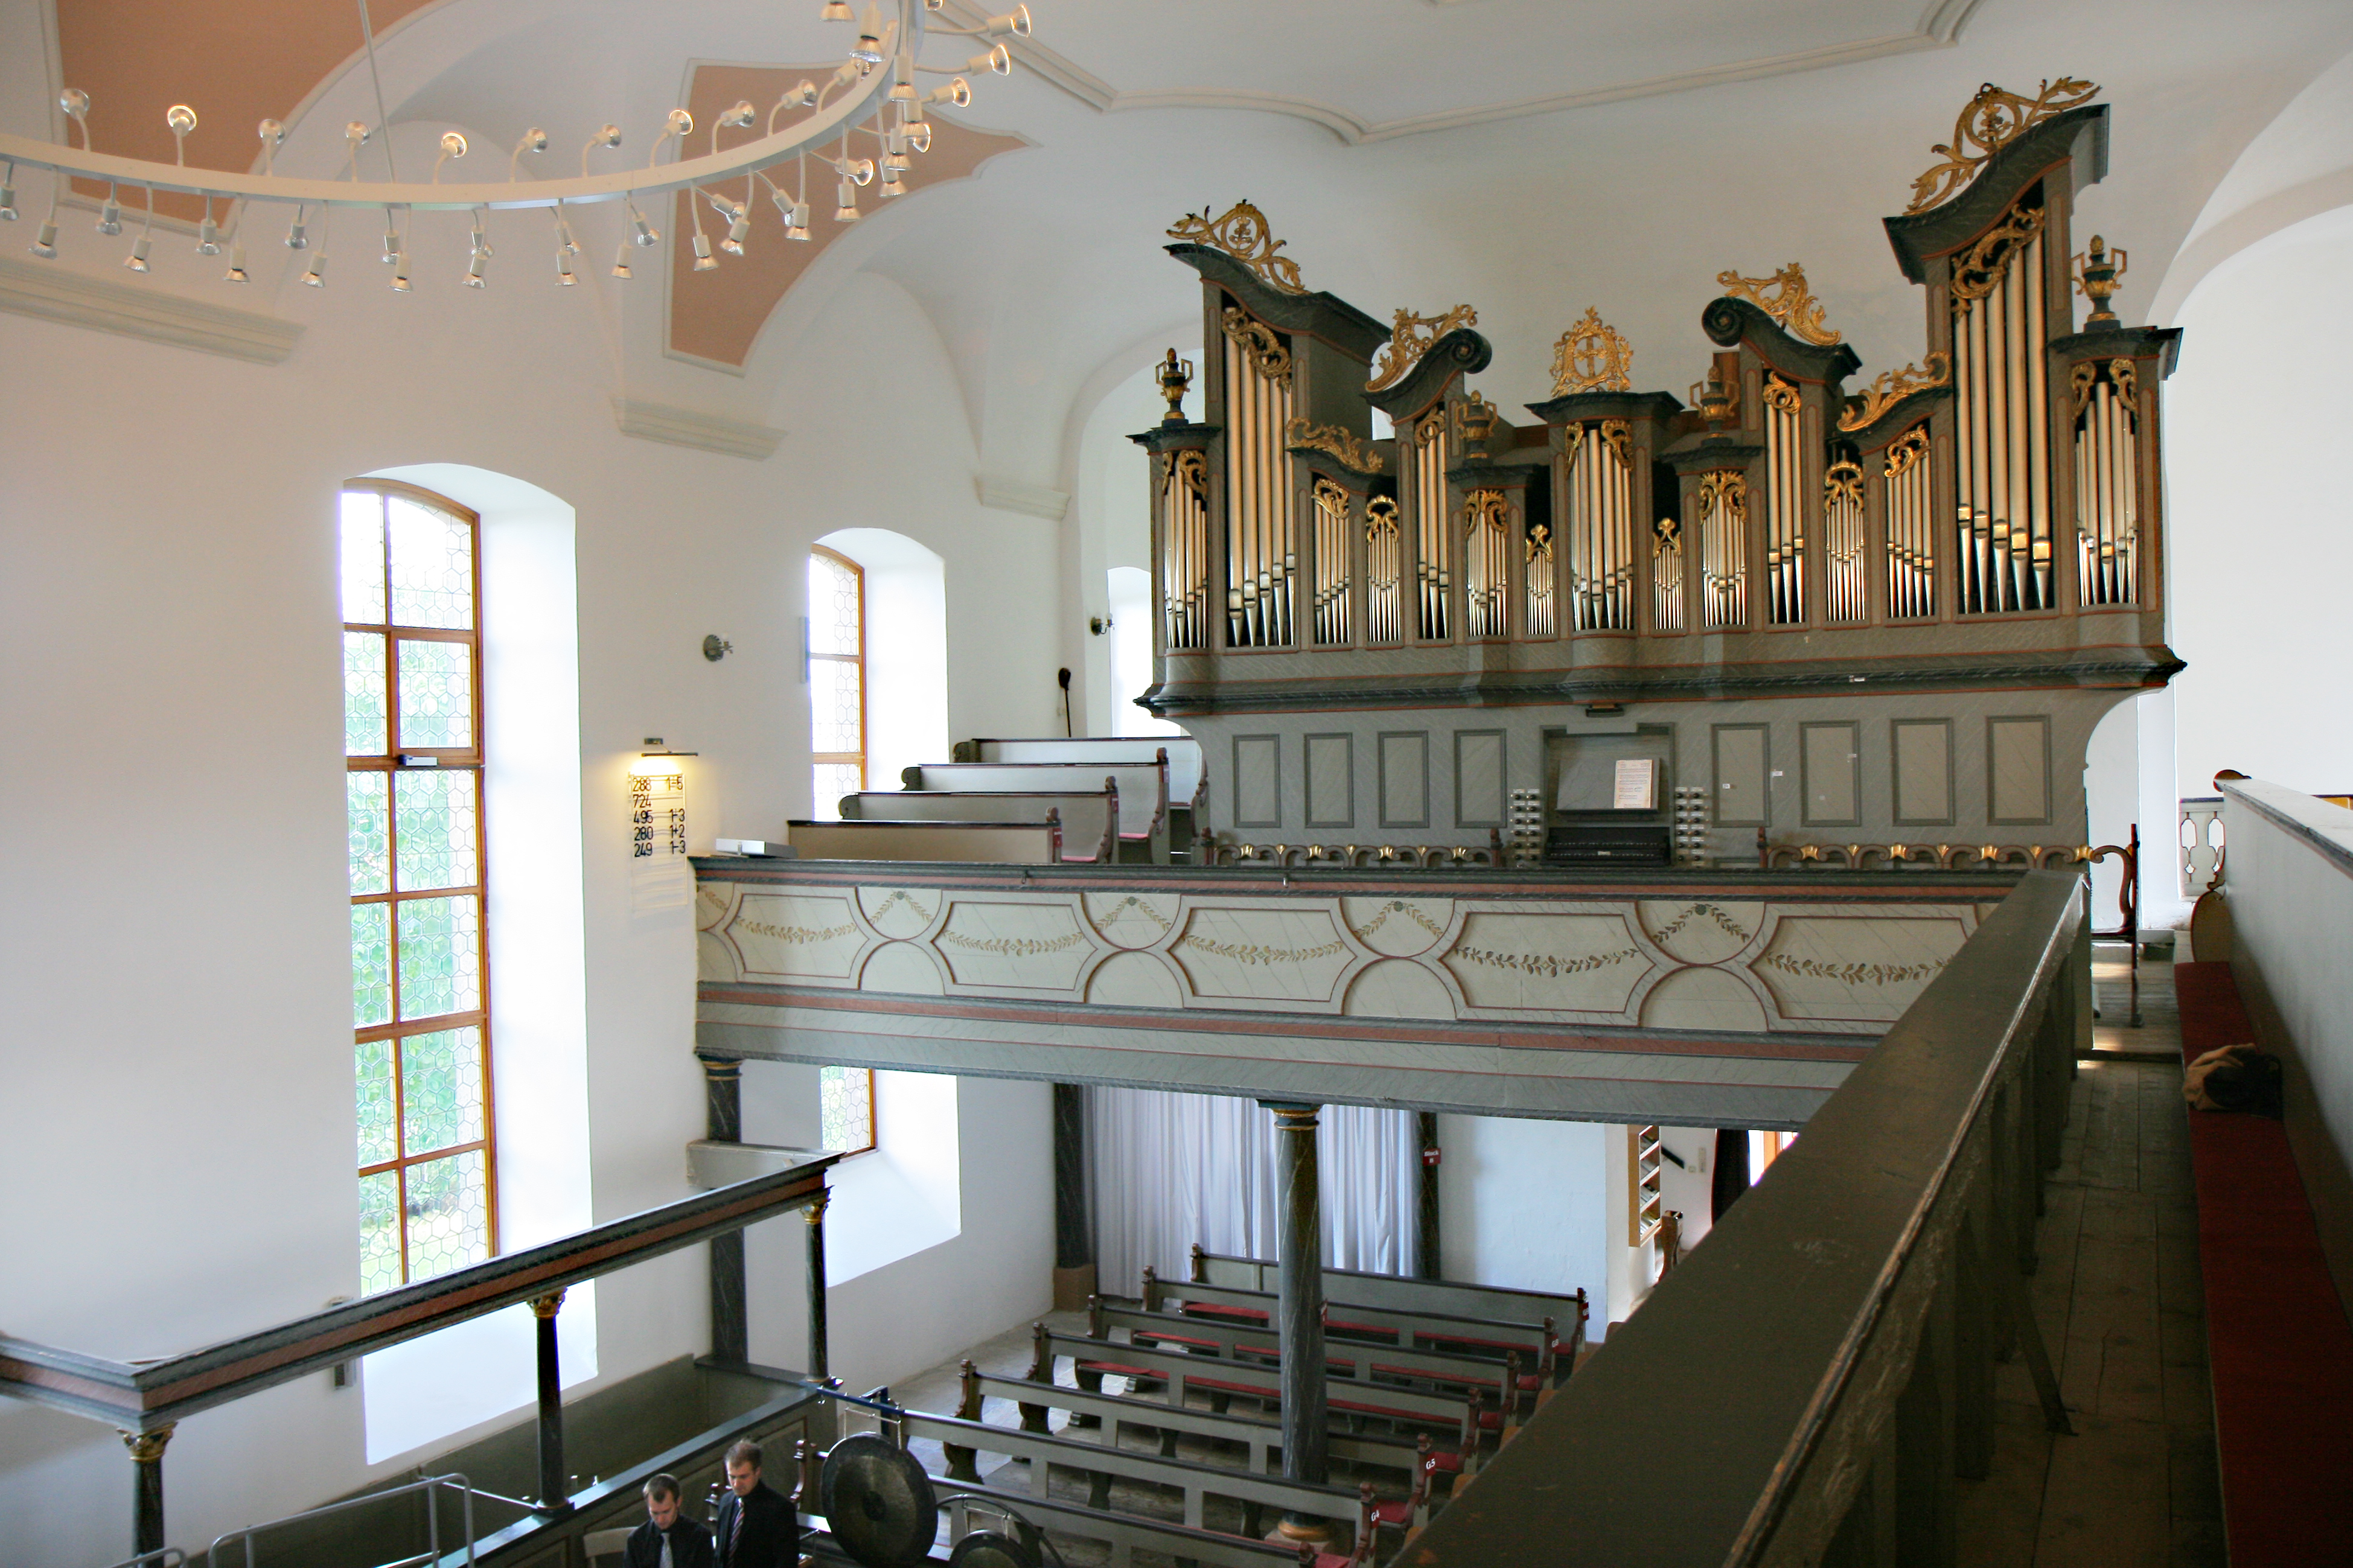 Seit über 40 Jahren findet der Nieder-Moooser Konzertsommer in der Ev. Kirche mit einer jährlich neu arrangierten Konzertreihe statt. Besondere Erwähnung sollte die unter Denkmalschutz stehende Orgel, 1790/1791 von Johann-Markus Oestreich erbaut, finden.